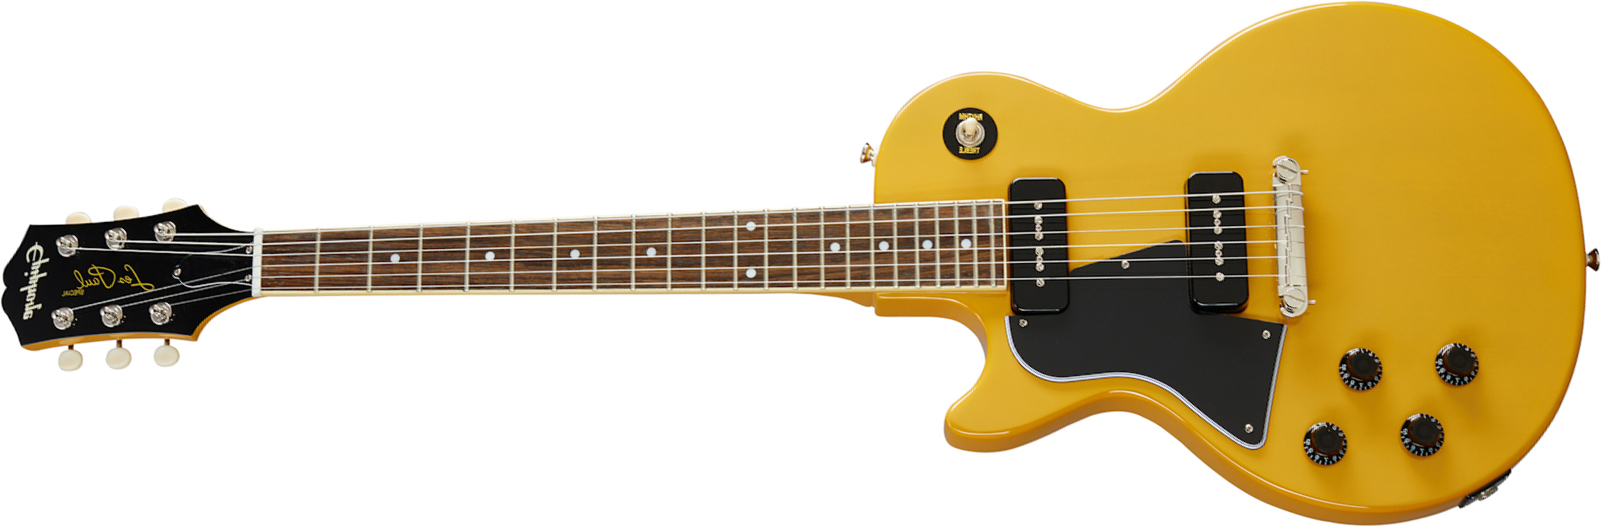 Epiphone Les Paul Special Lh Original Gaucher 2s P90 Ht Lau - Tv Yellow - Left-handed electric guitar - Main picture